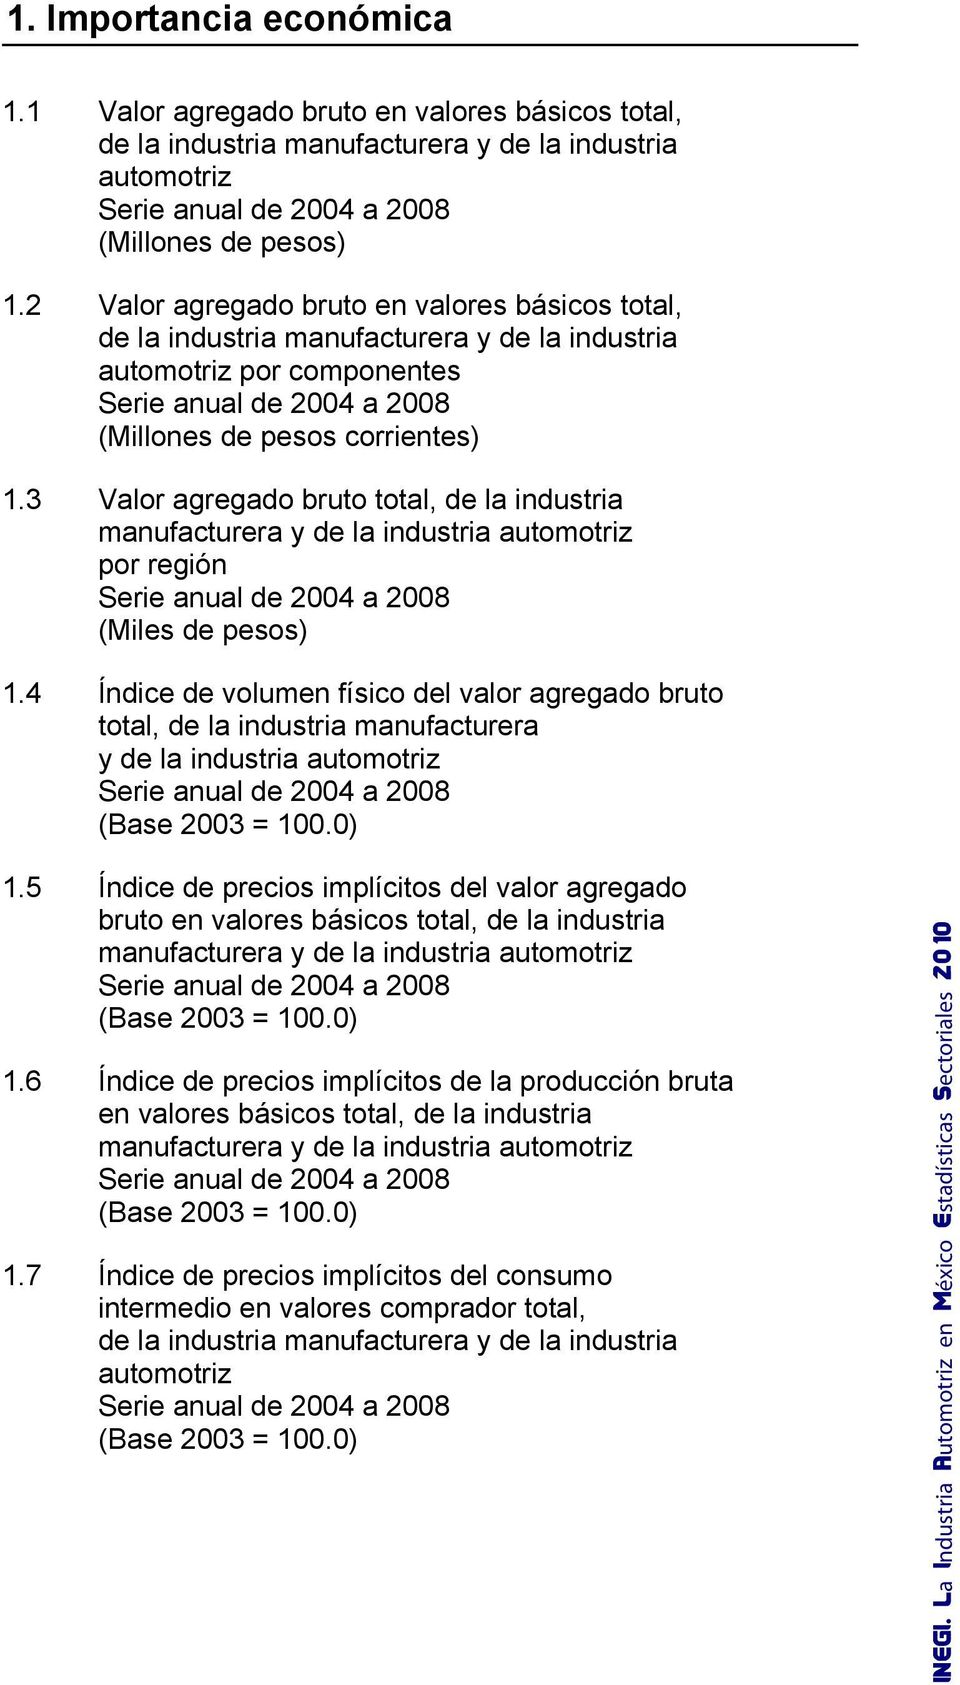 3 Valor agregado bruto total, de la industria manufacturera y de la industria automotriz por región Serie anual de 2004 a 2008 (Miles de pesos) 1.